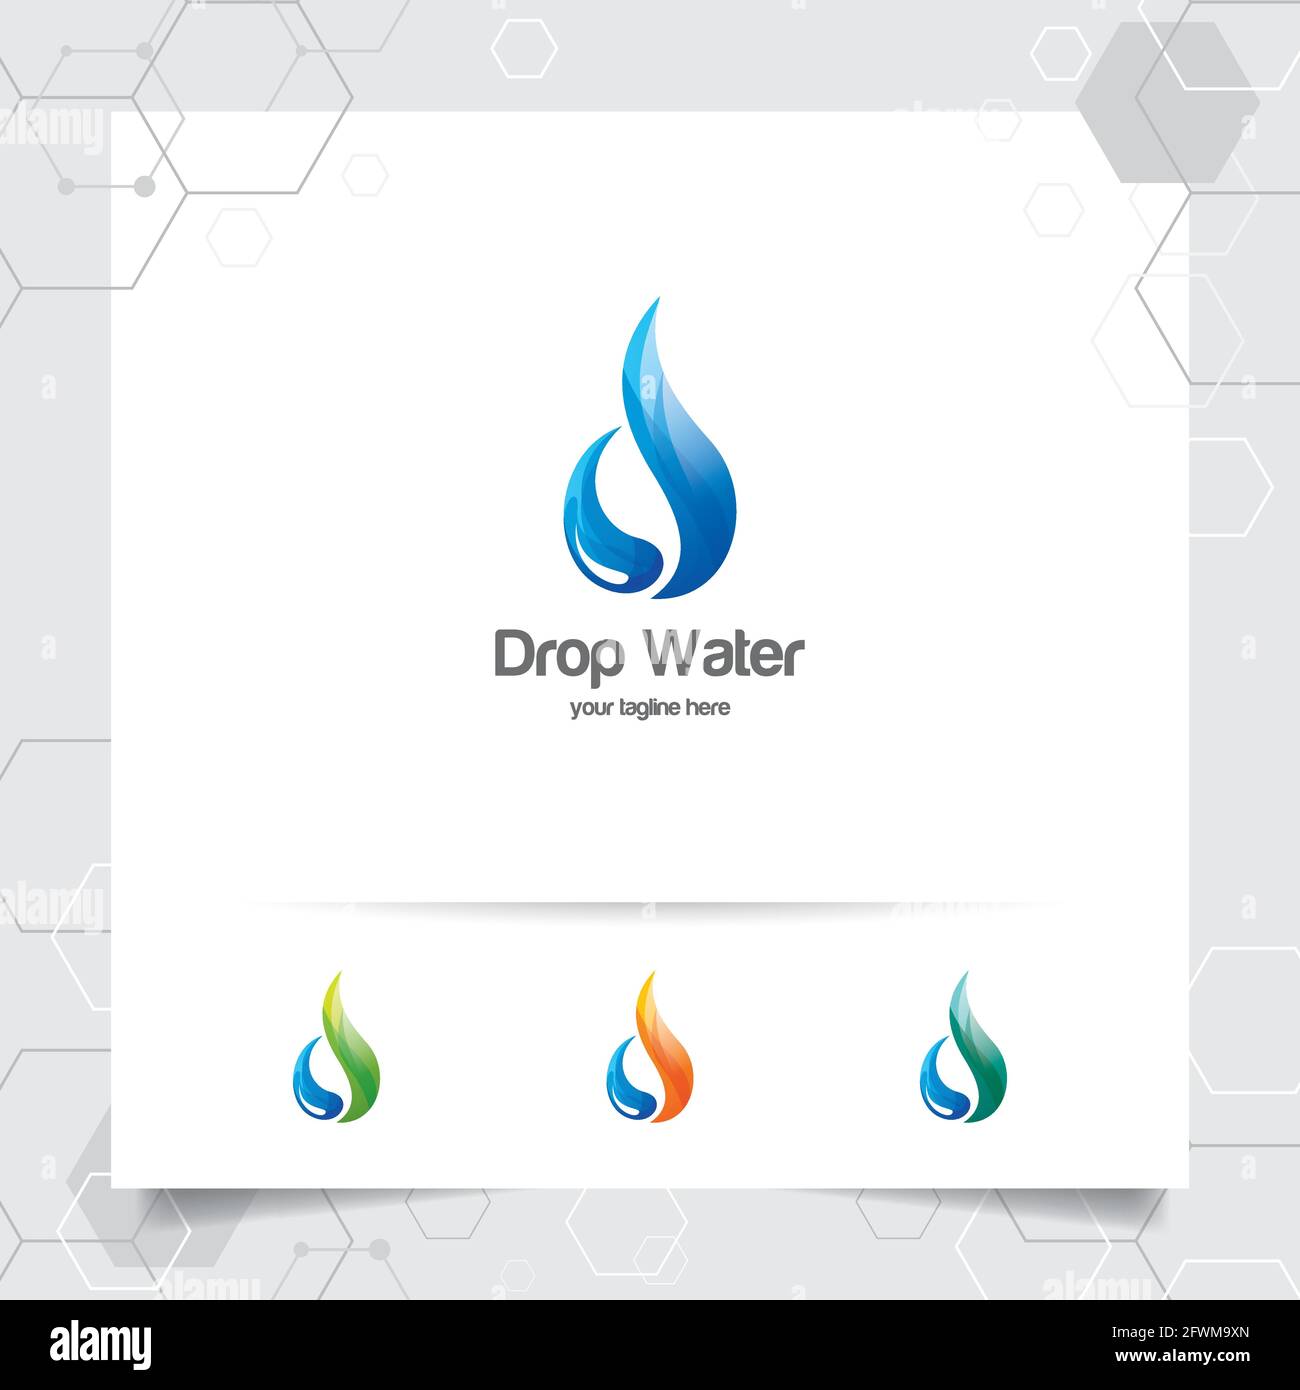 Tropfenwasser-Logo-Design mit Konzept von Tröpfchen-Symbol und Spritzwasser-Vektor für Mineralwasser Unternehmen und Sanitär verwendet. Stock Vektor